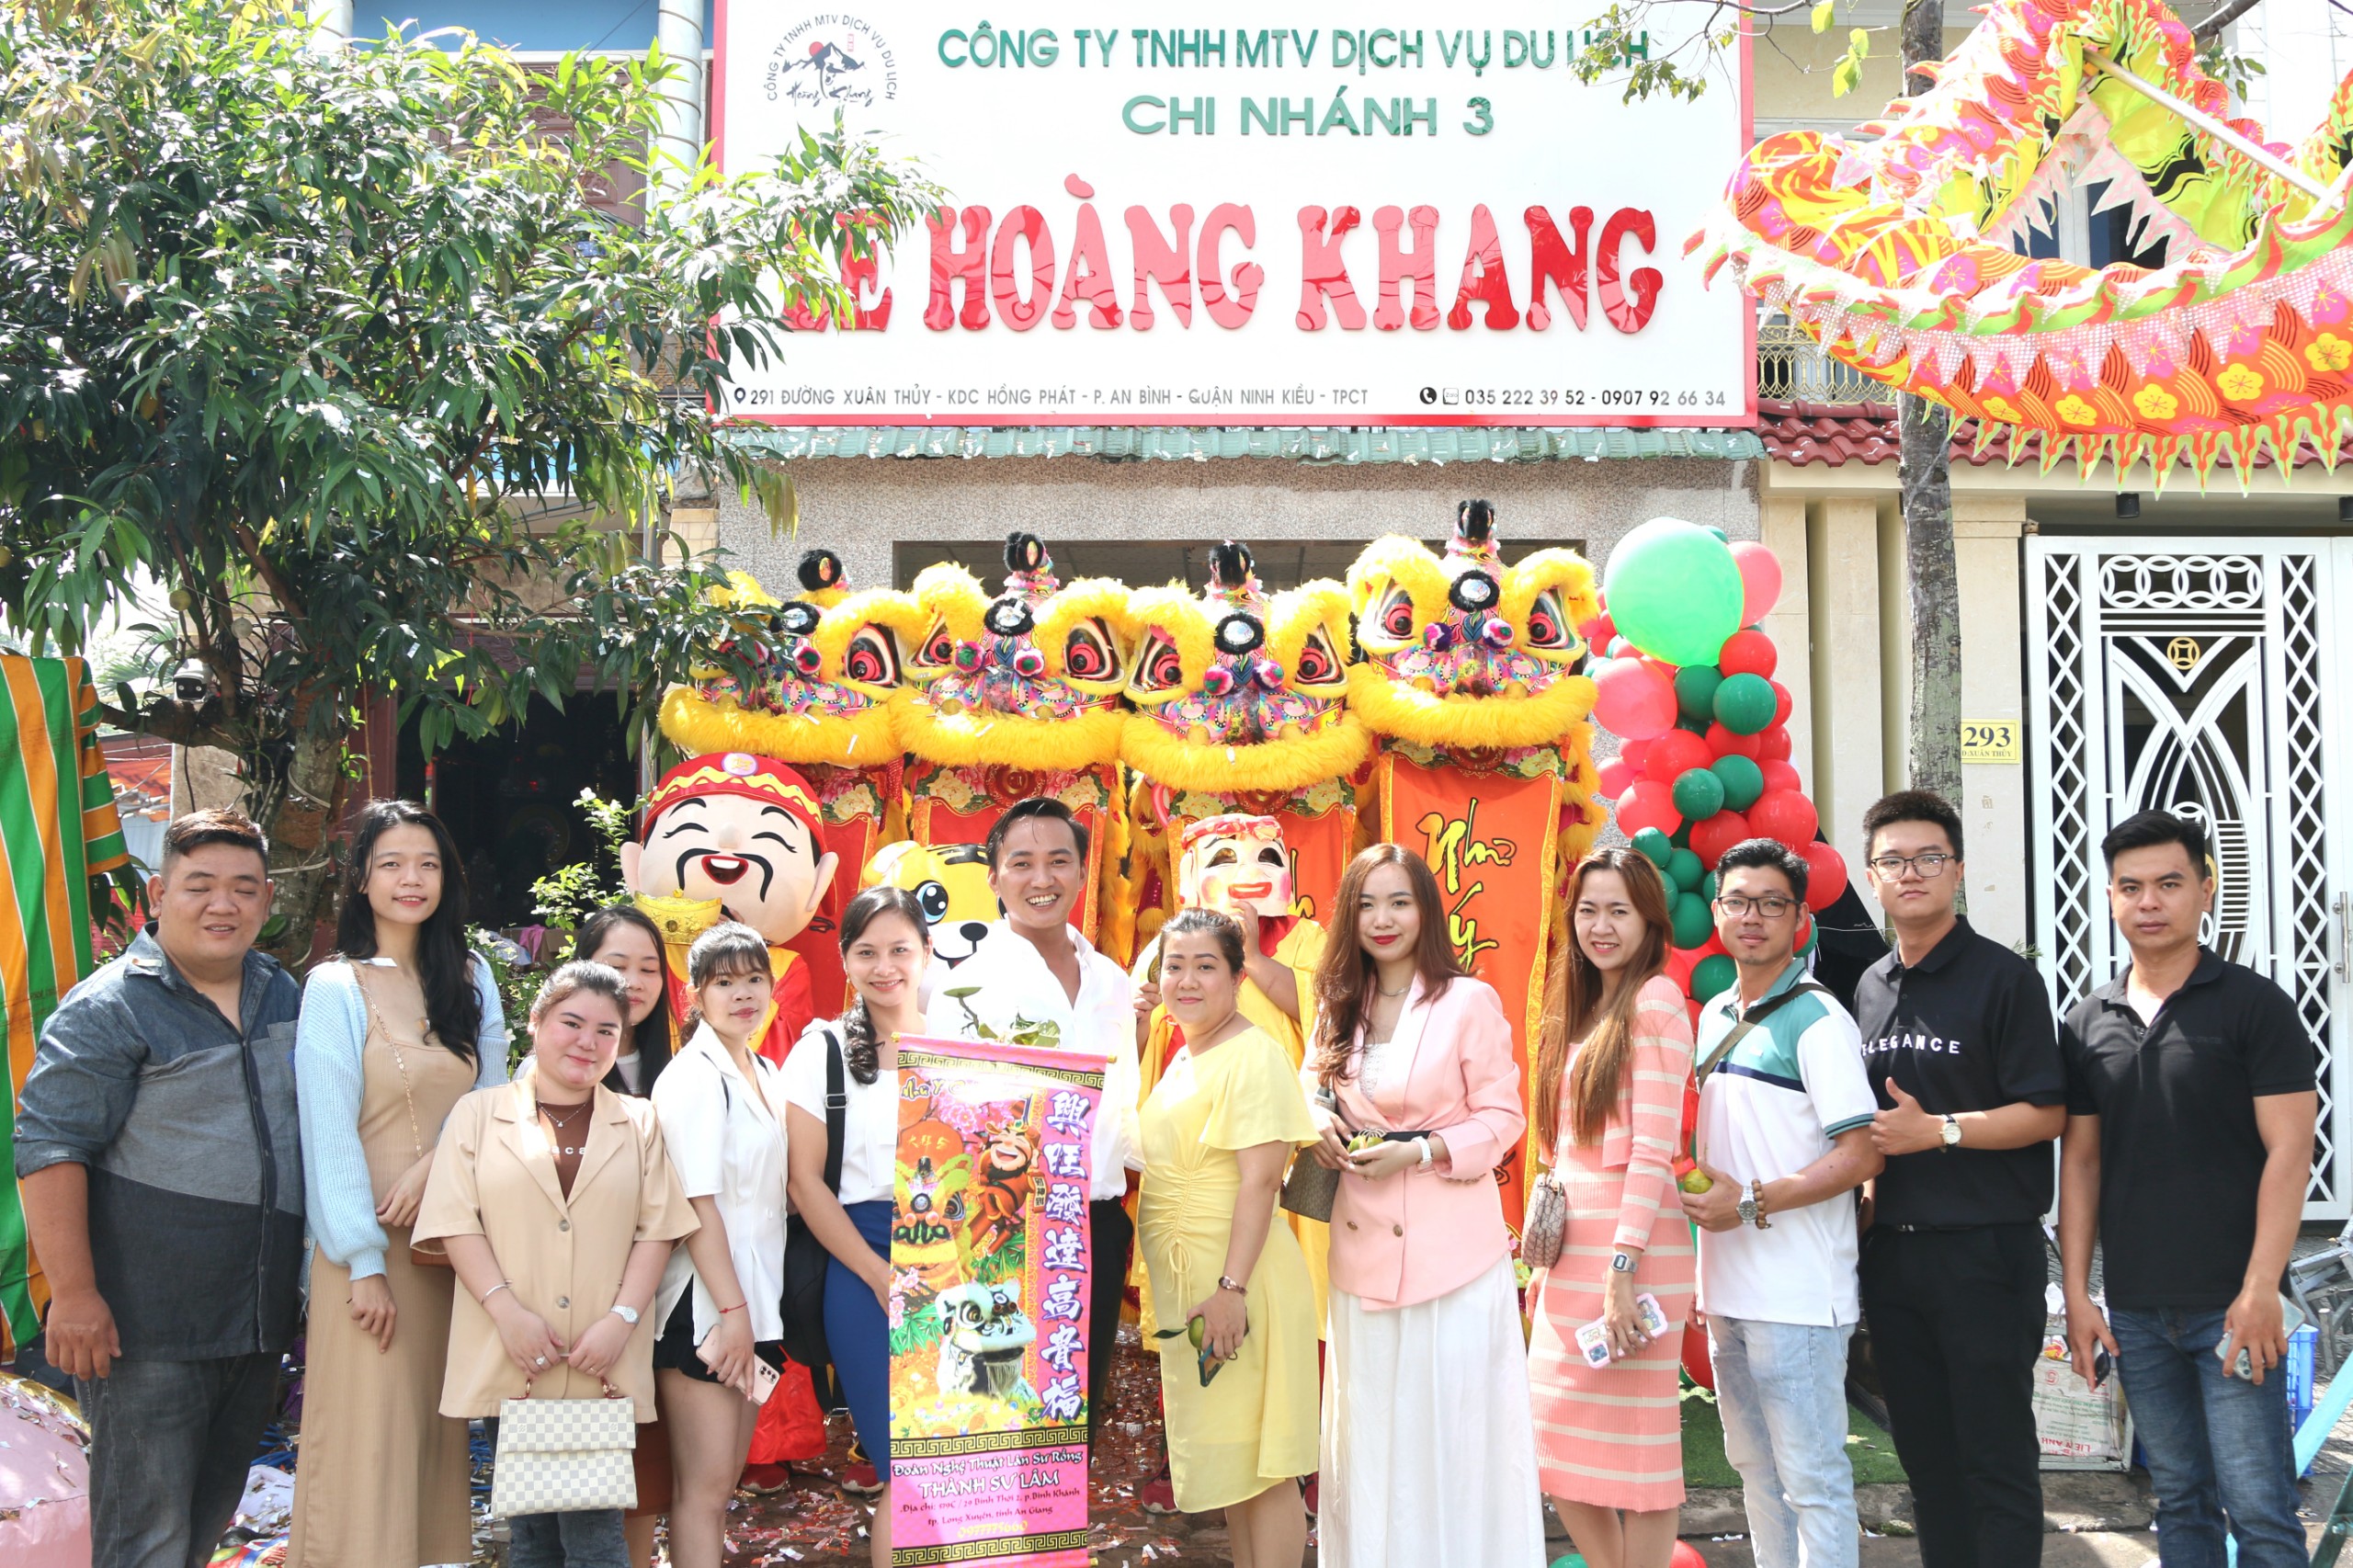 Công ty TNHH Dịch vụ Du lịch Lê Hoàng Khang vừa chính thức khai trương văn phòng công ty tại quận Ninh Kiều, TP. Cần Thơ